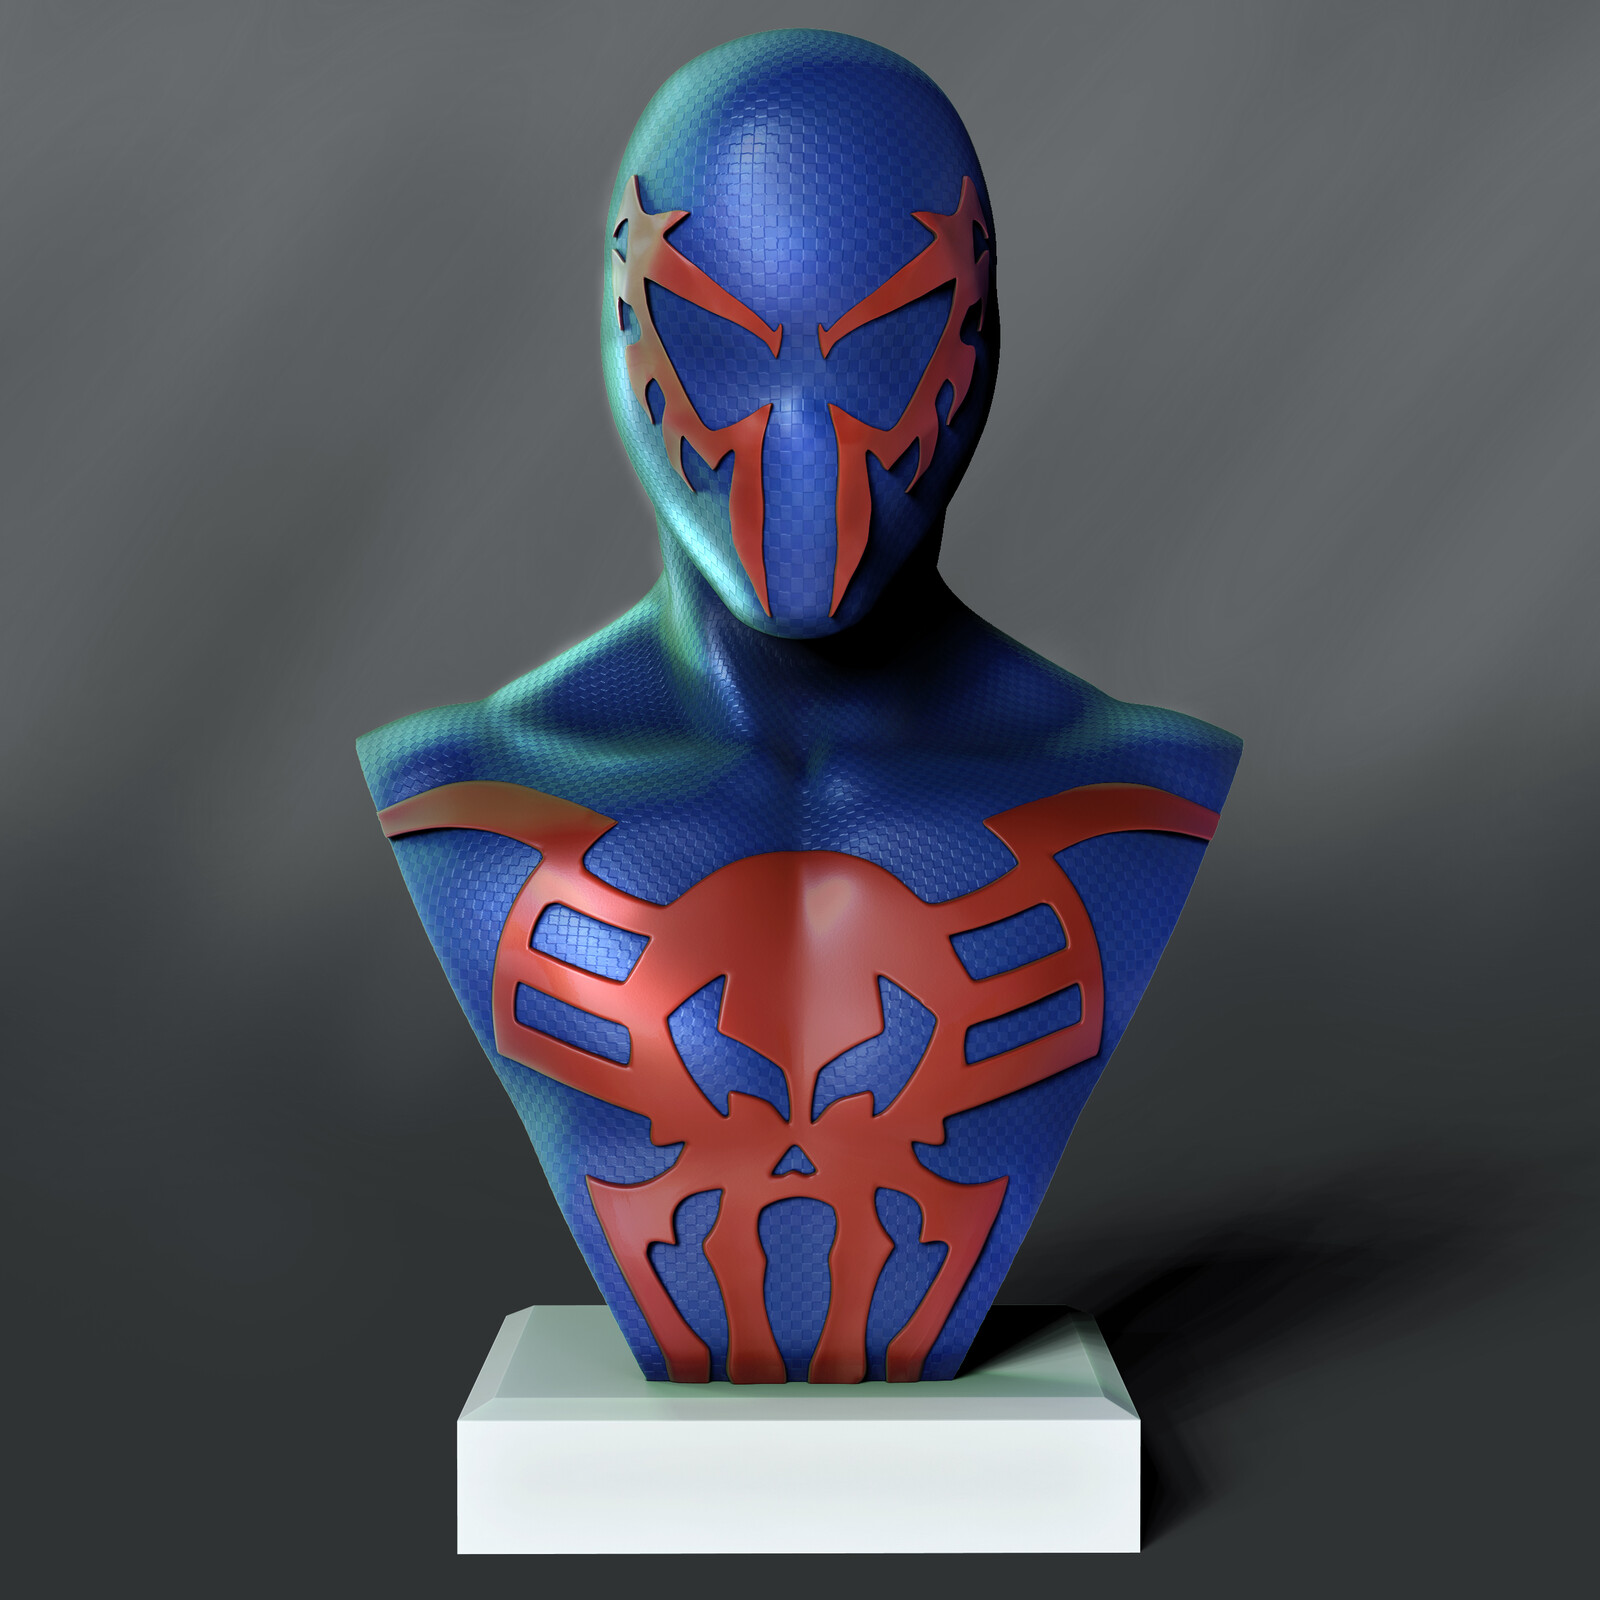 Spider-Man 2099 - Fan Art.